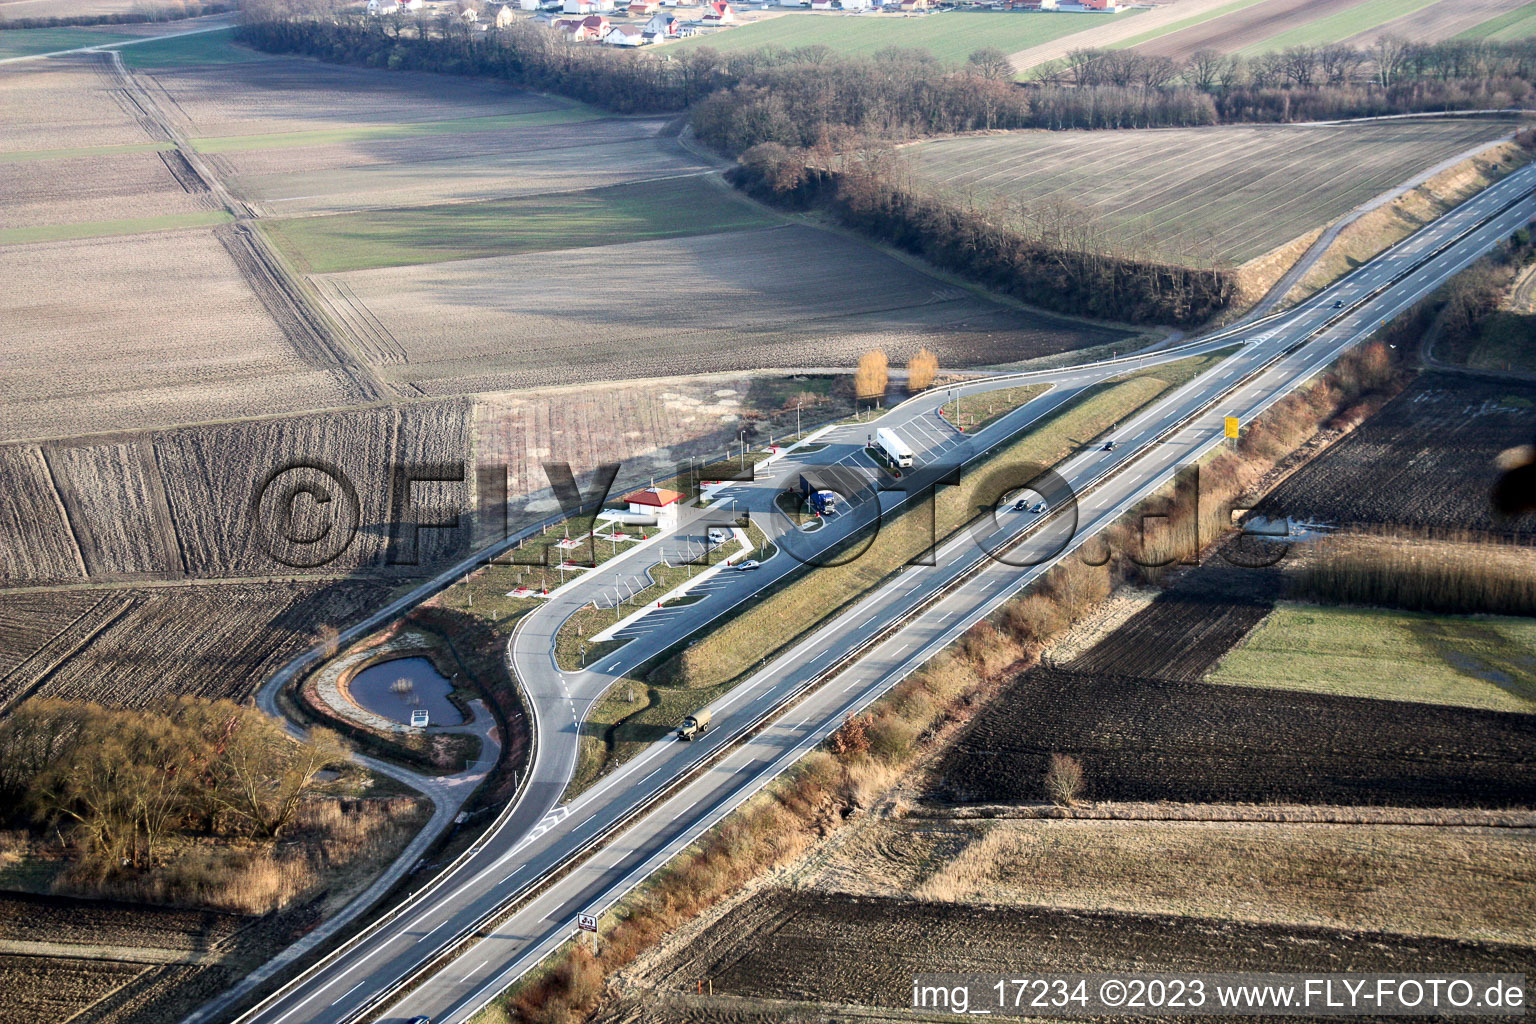 Vue aérienne de La nouvelle aire de repos sur la B9 à Rülzheim dans le département Rhénanie-Palatinat, Allemagne